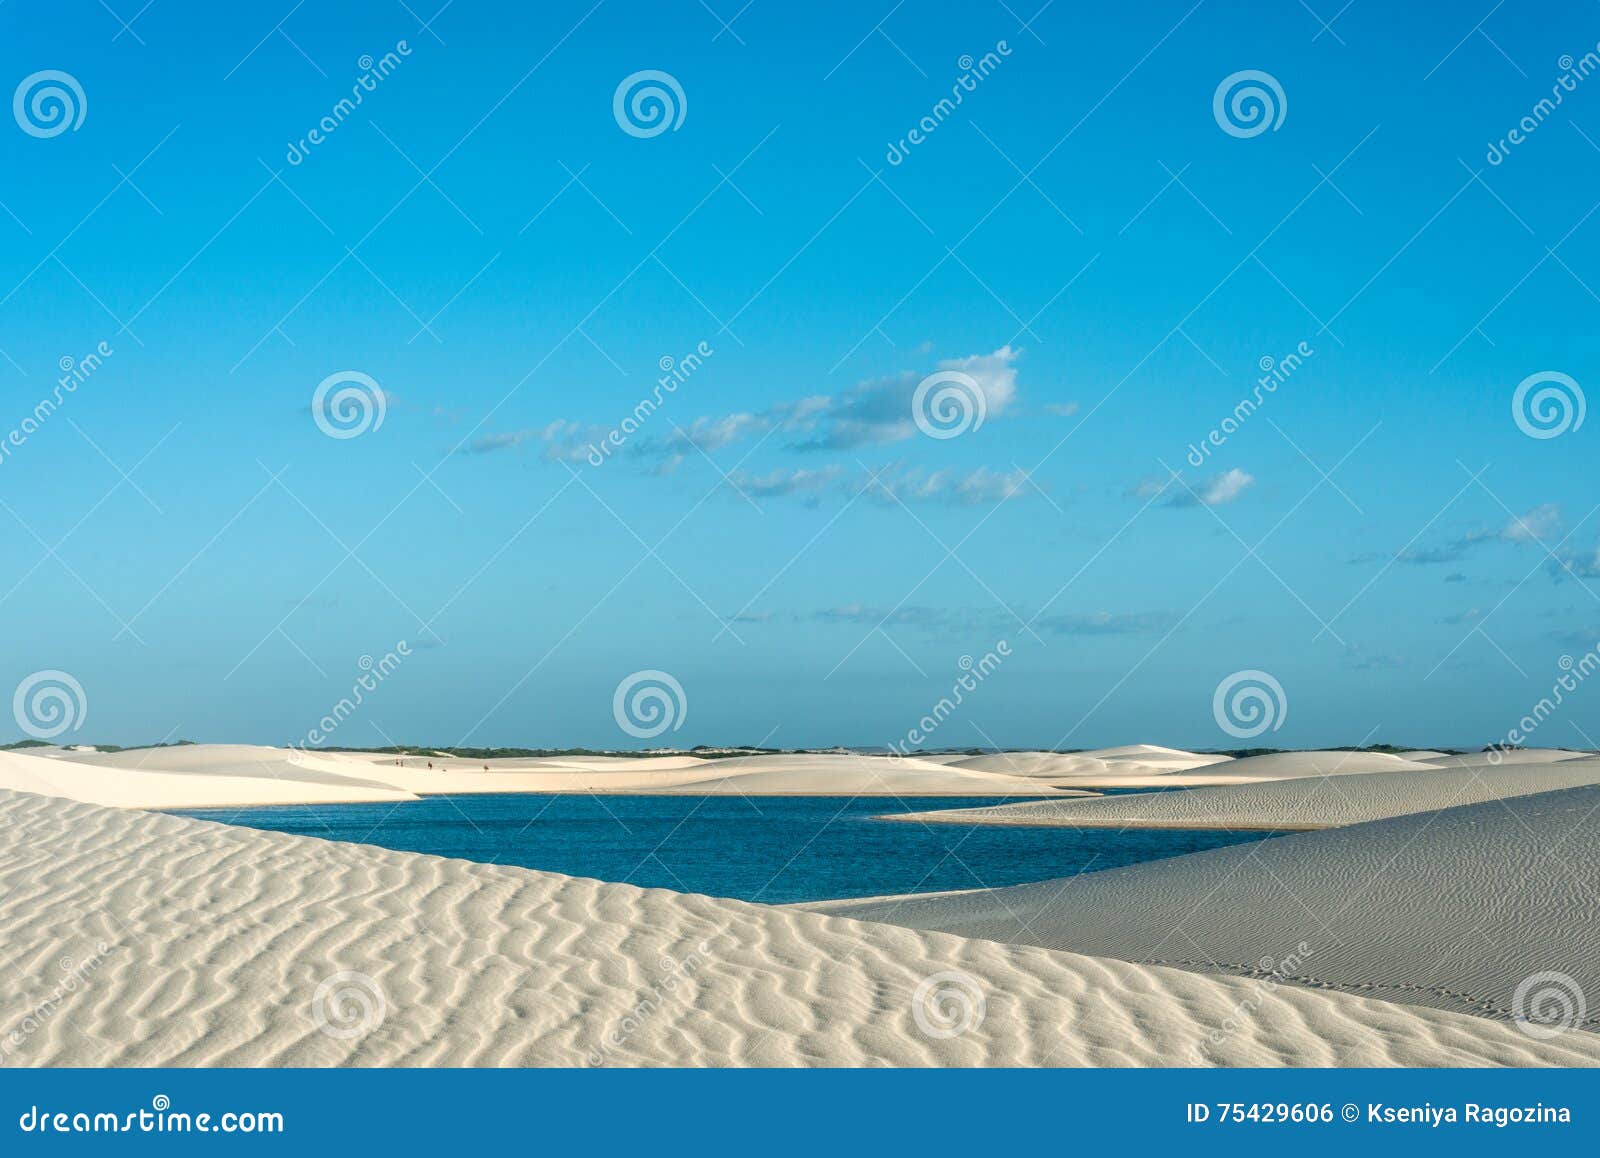 lagoons in the desert of lencois maranhenses national park